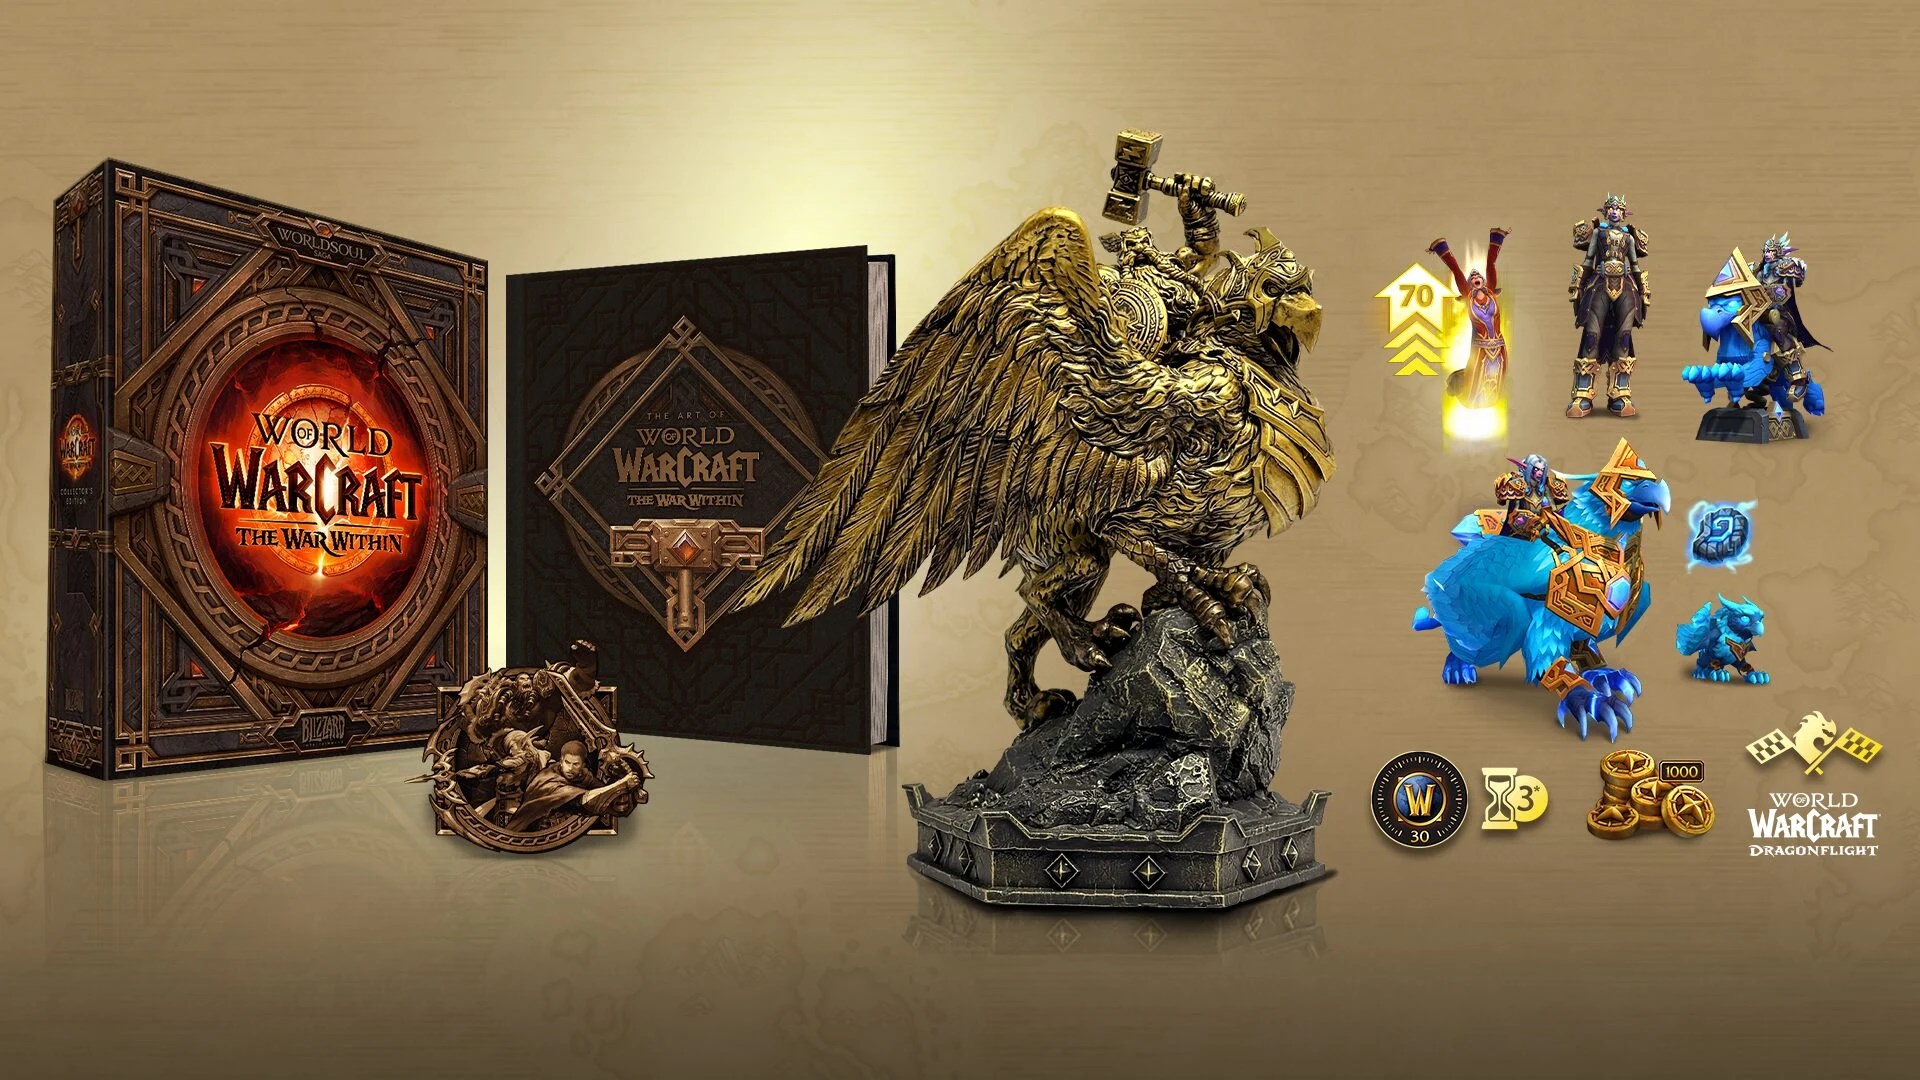 محتوای نسخه گردآوری بیستمین سالگرد World of Warcraft